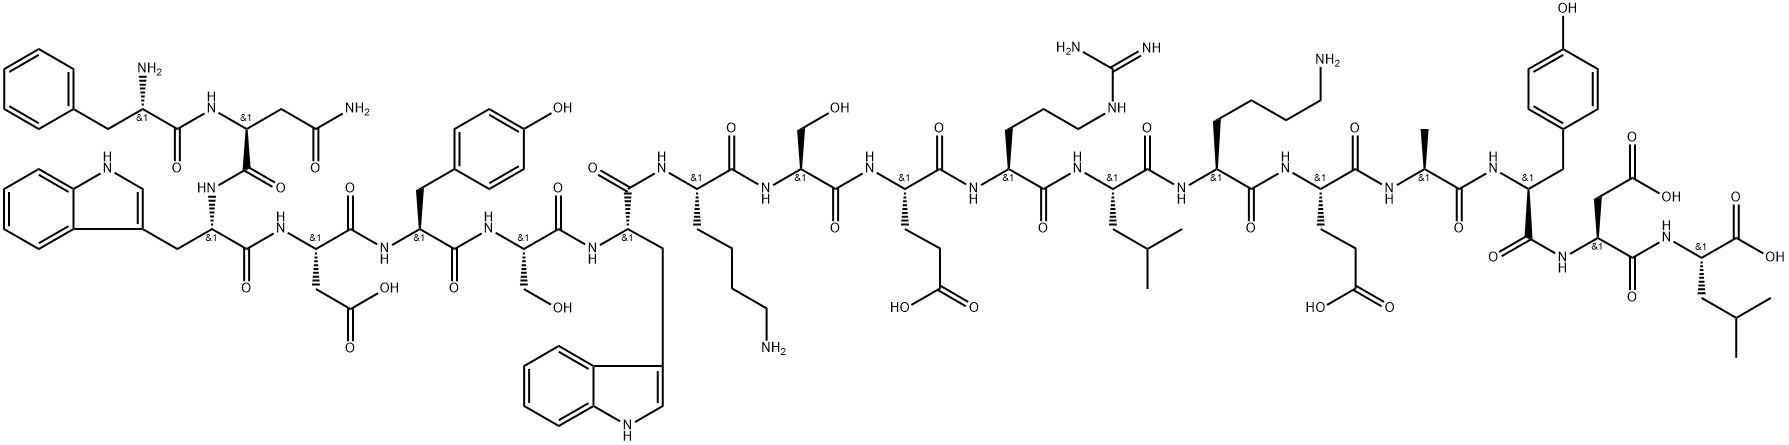 2135542-86-6 配体肽HUMAN PD-L1 INHIBITOR I